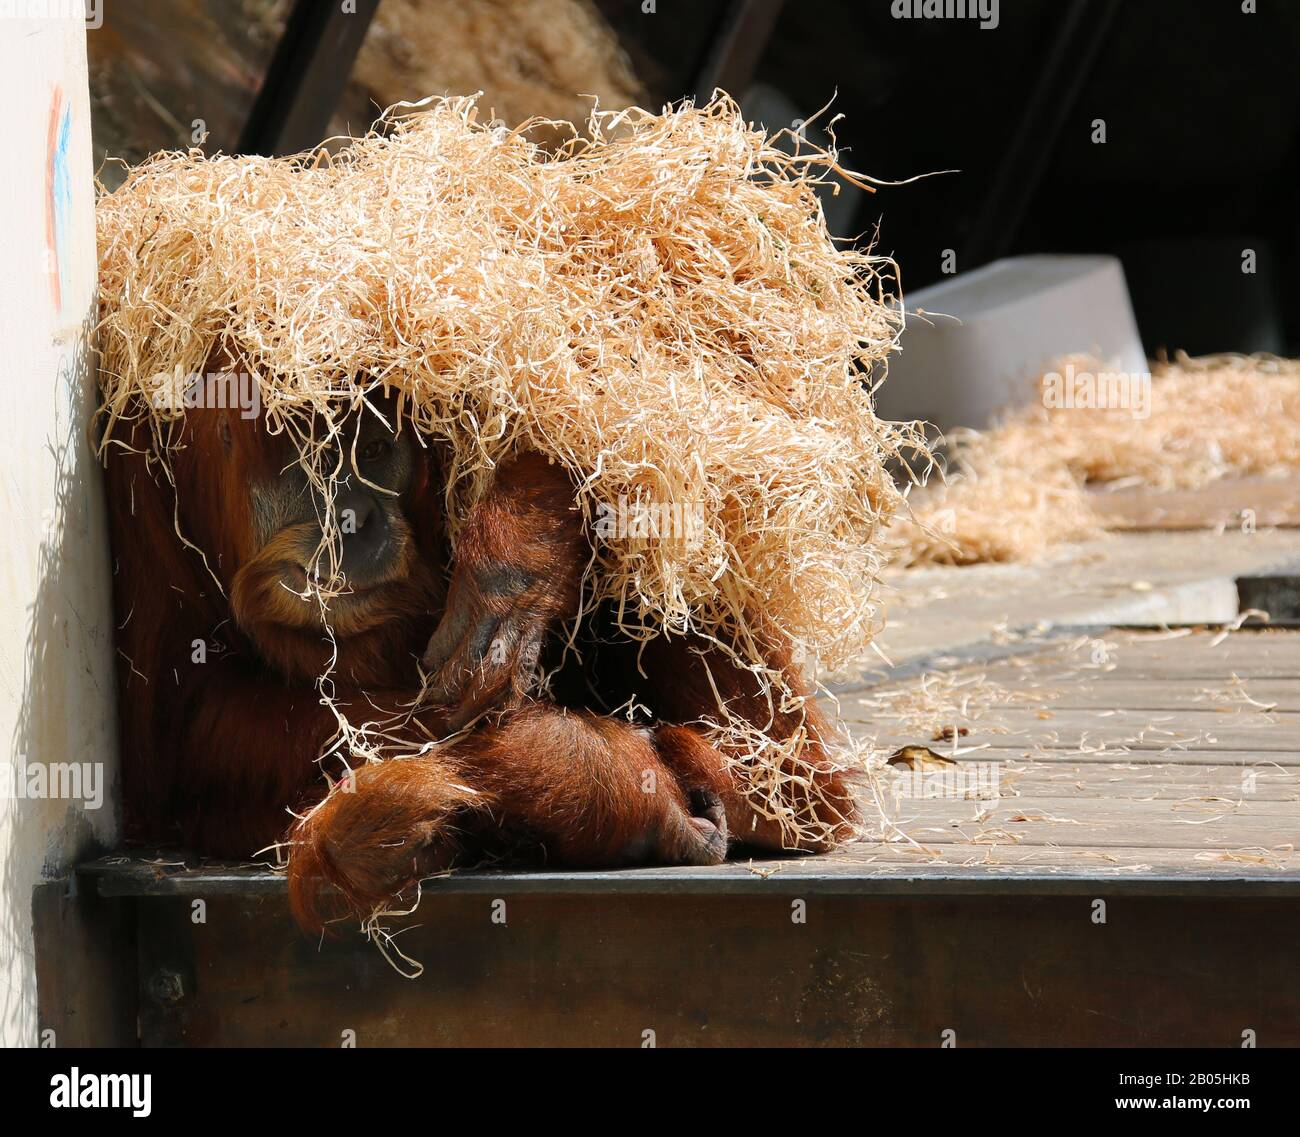 Orangutang recouvert de paille Banque D'Images